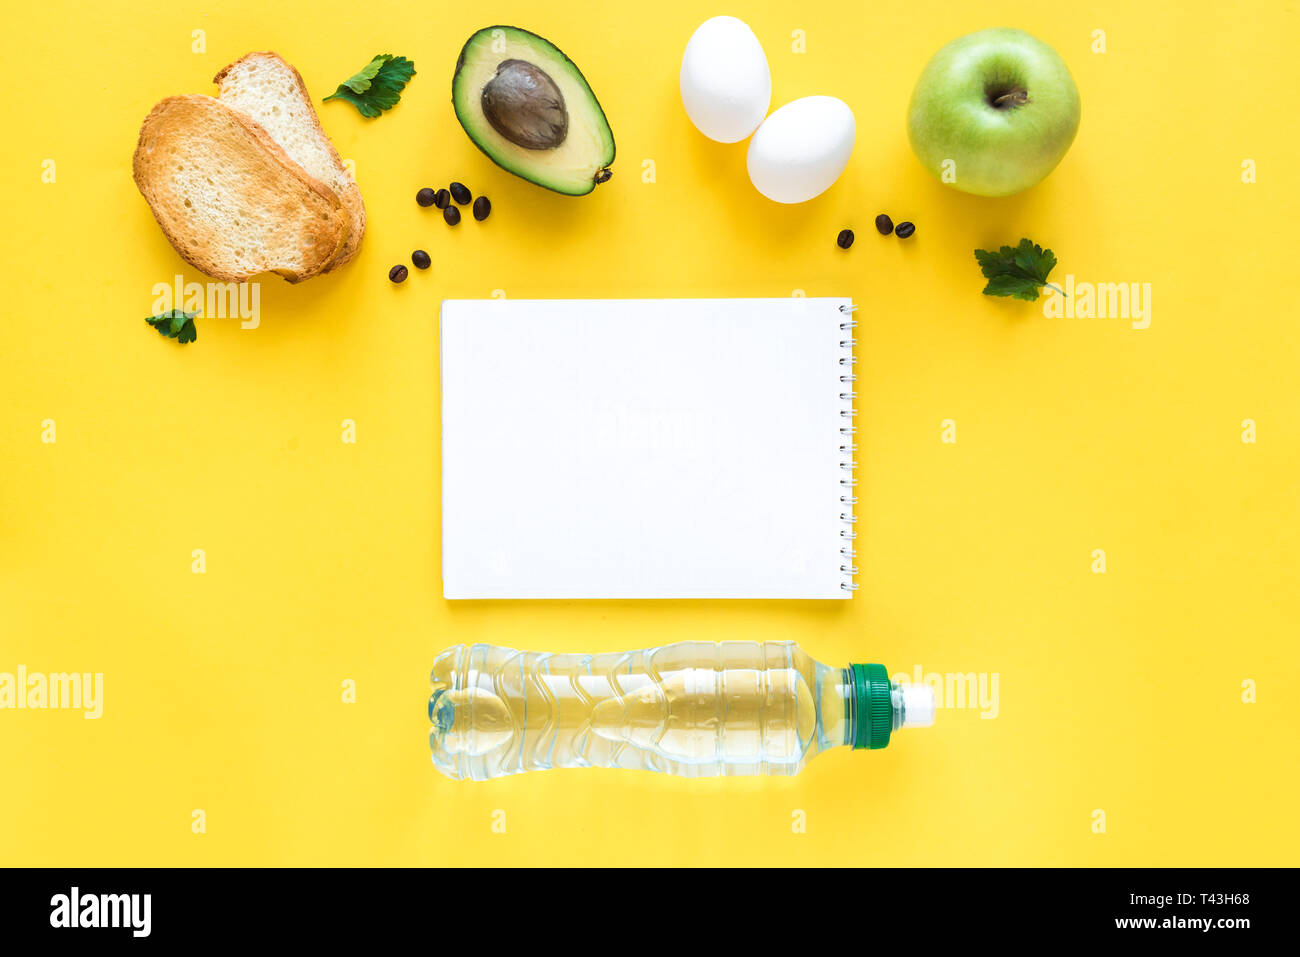 Avocado, Ei und Toast zum Frühstück und Notiz Buch auf gelbem Hintergrund, Ansicht von oben, kopieren. Gesunde Zutaten für das Frühstück - Eier, Brot, Avocado und Stockfoto